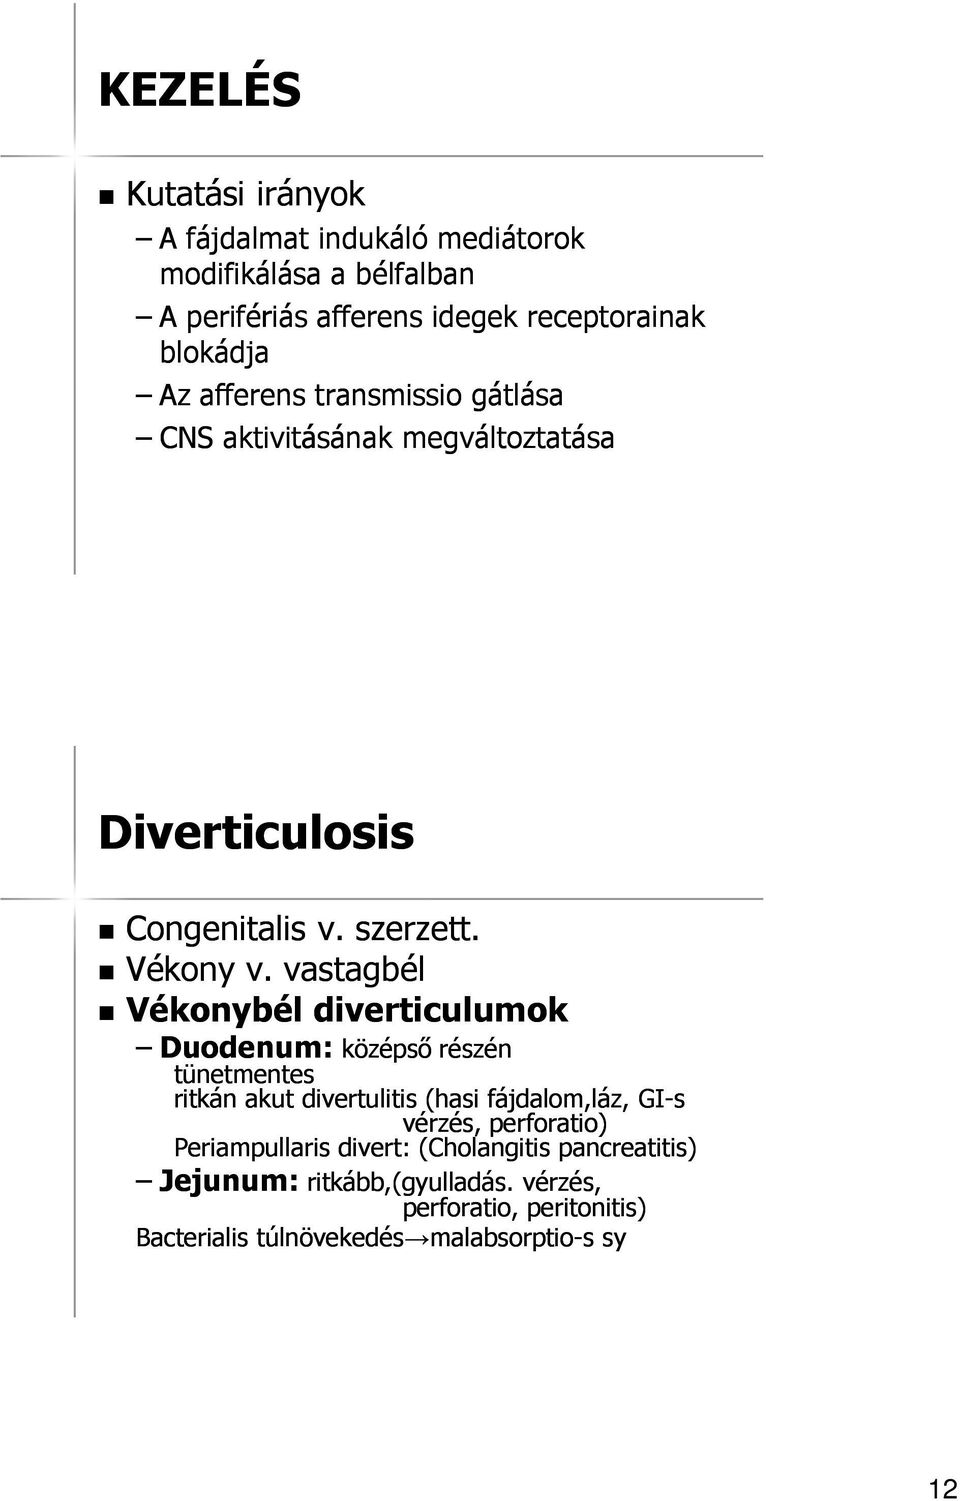 vastagbél Vékonybél diverticulumok Duodenum: középső részén tünetmentes ritkán akut divertulitis (hasi fájdalom,láz, GI-s vérzés,